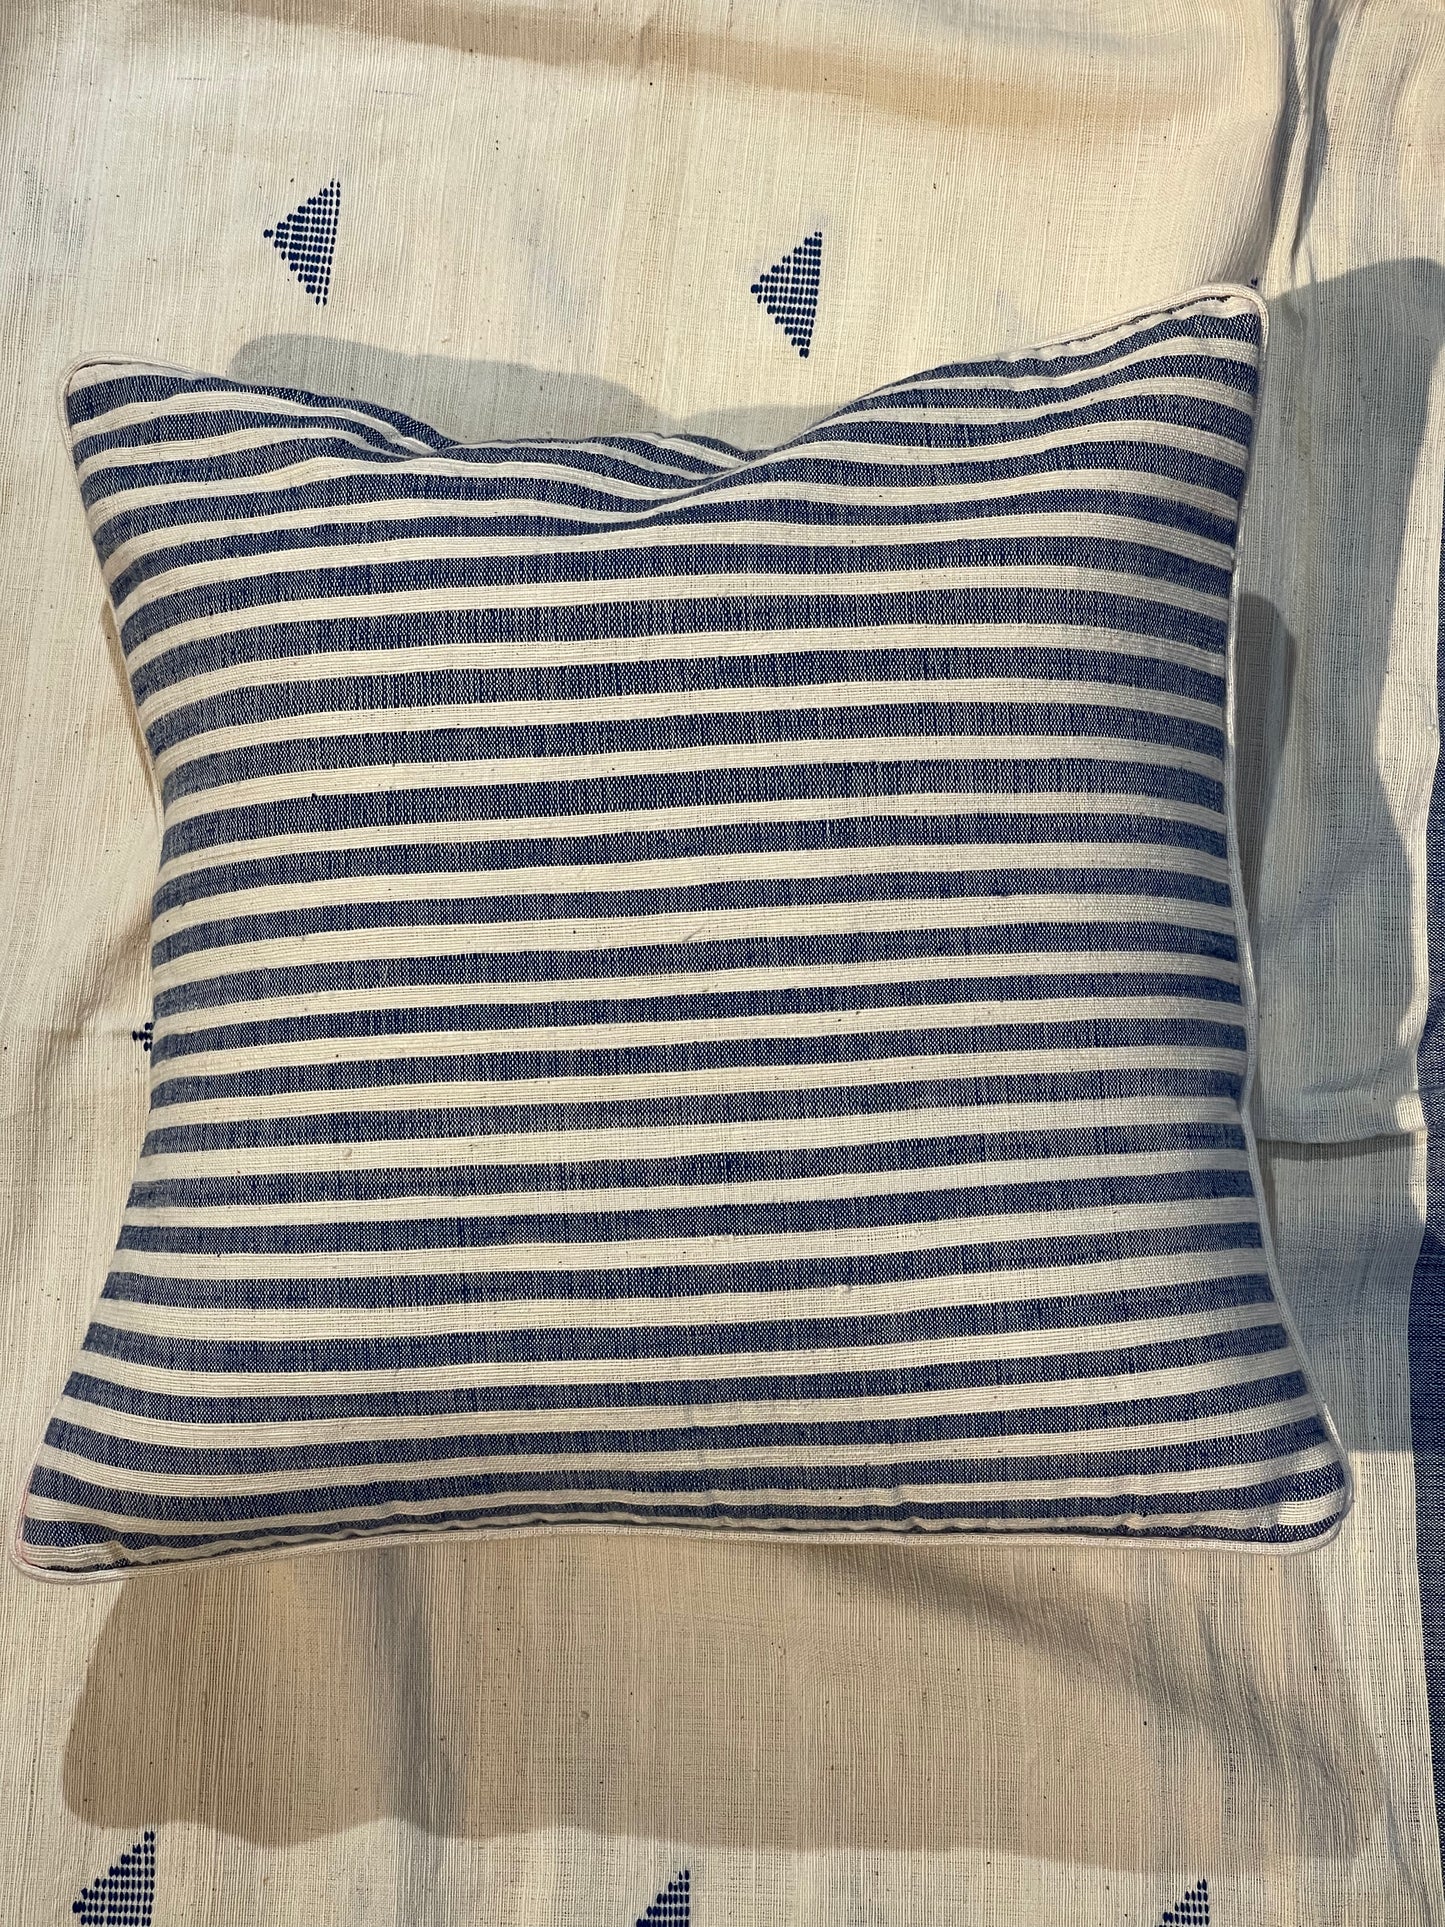 White n blue stripes handspun handwoven cotton cushion cover